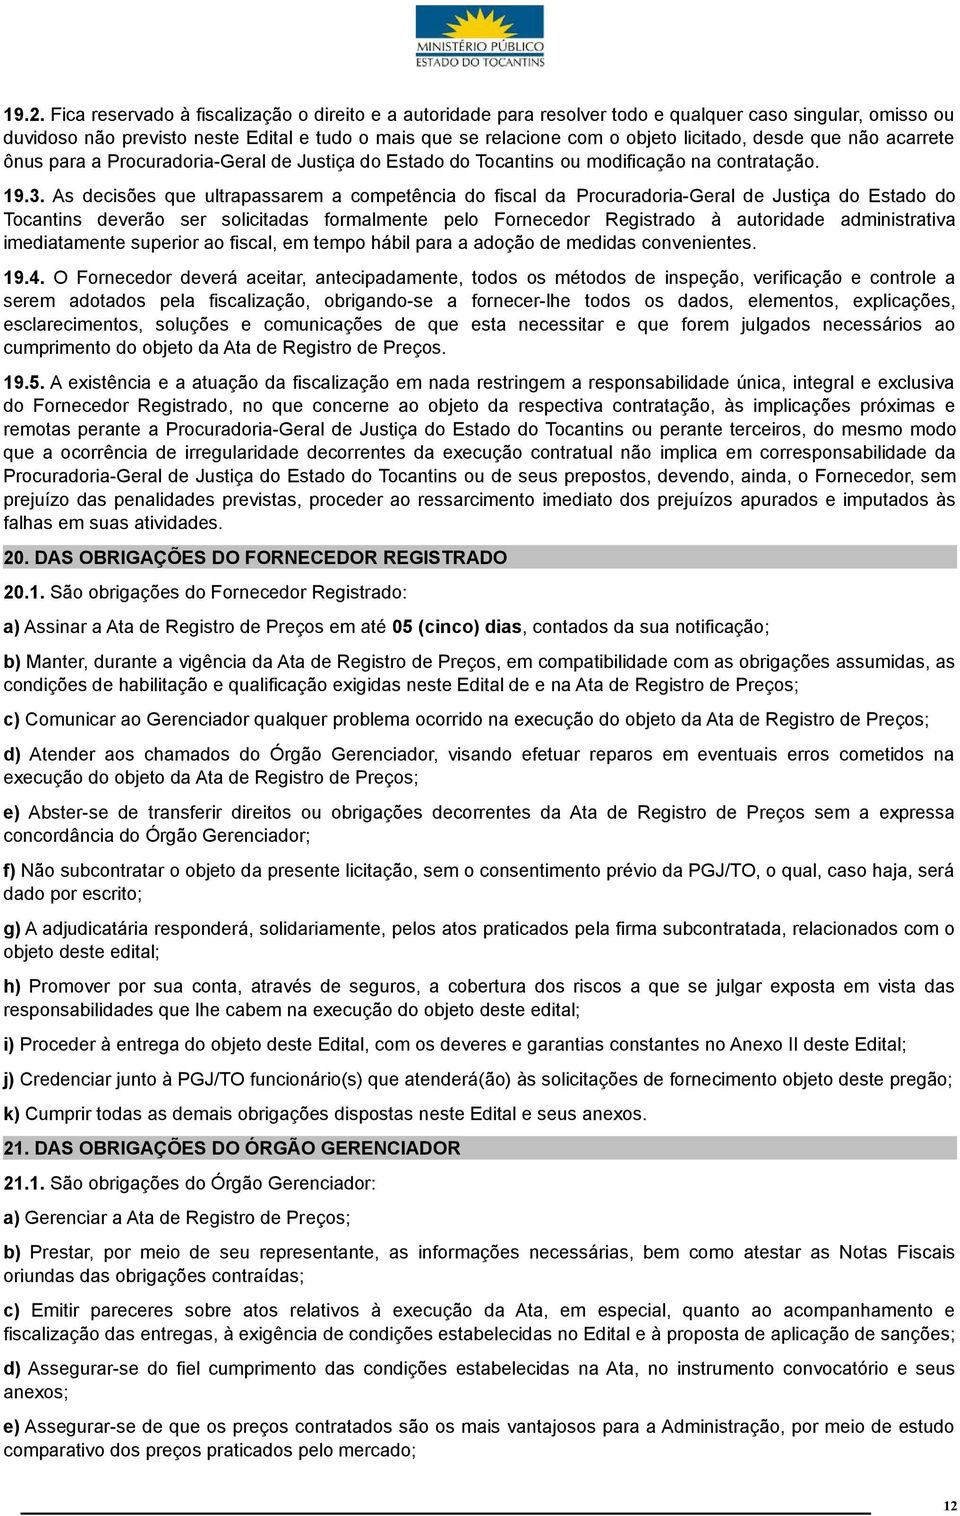 As decisões que ultrapassarem a competência do fiscal da Procuradoria-Geral de Justiça do Estado do Tocantins deverão ser solicitadas formalmente pelo Fornecedor Registrado à autoridade